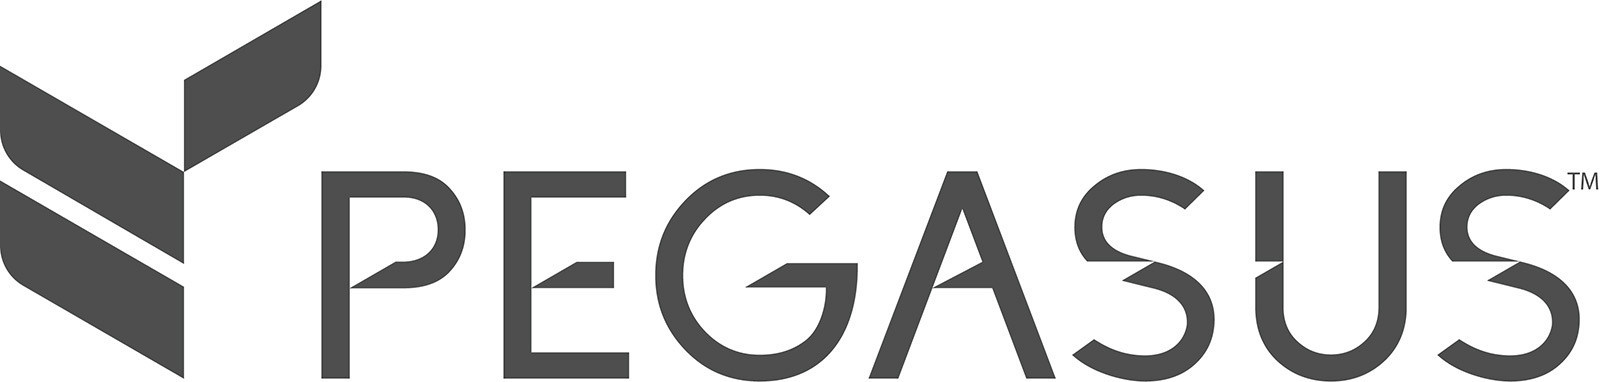 Pegasus software solutions login